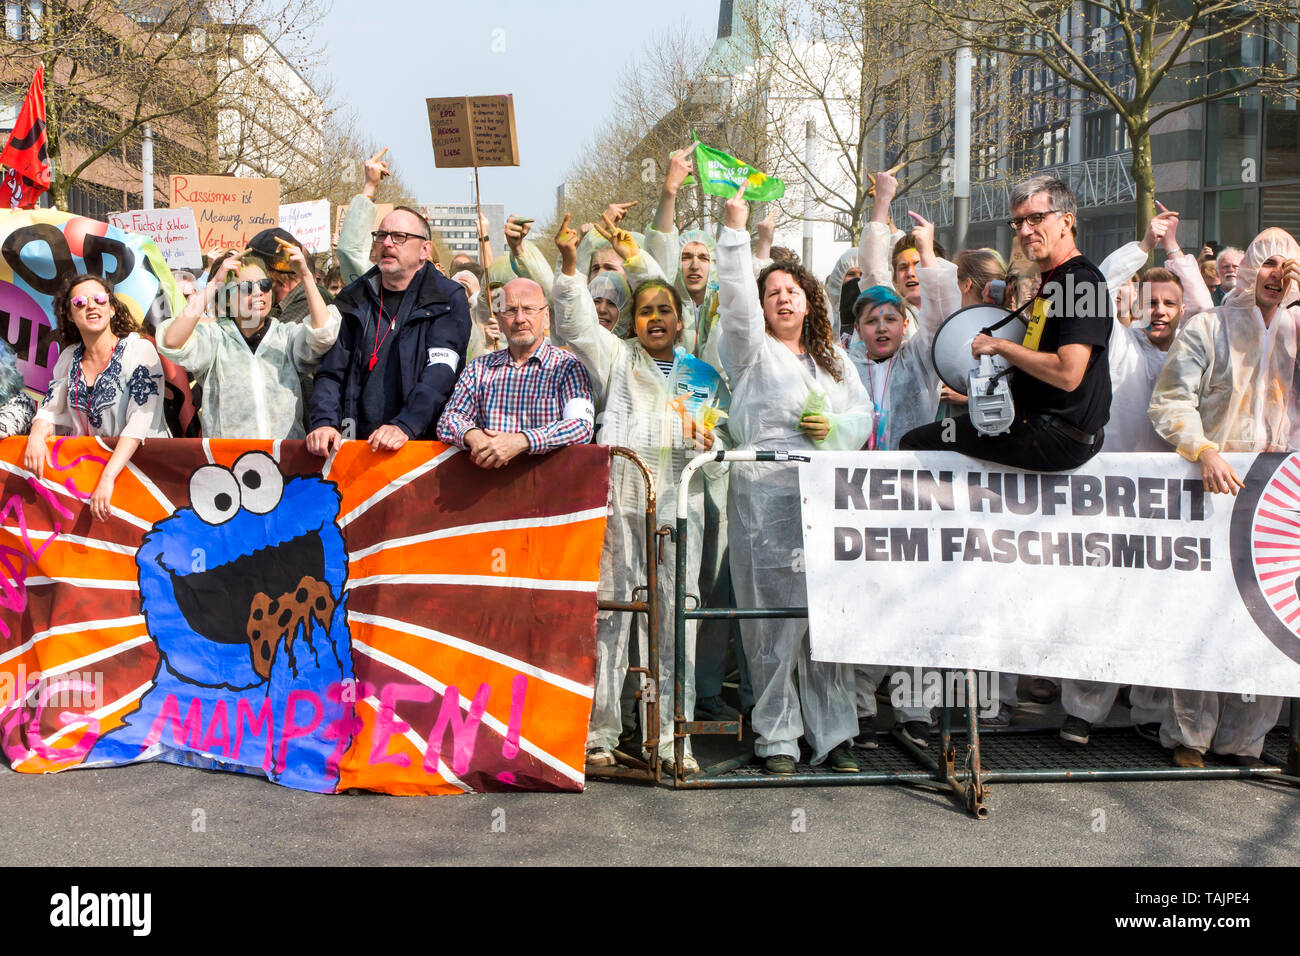 Gegendemonstration der Antifa in einer Demonstration von Rechtsextremen Gruppen in Dortmund unter dem Motto "Europa Erwache, Deutschland, in einem residenti Stockfoto